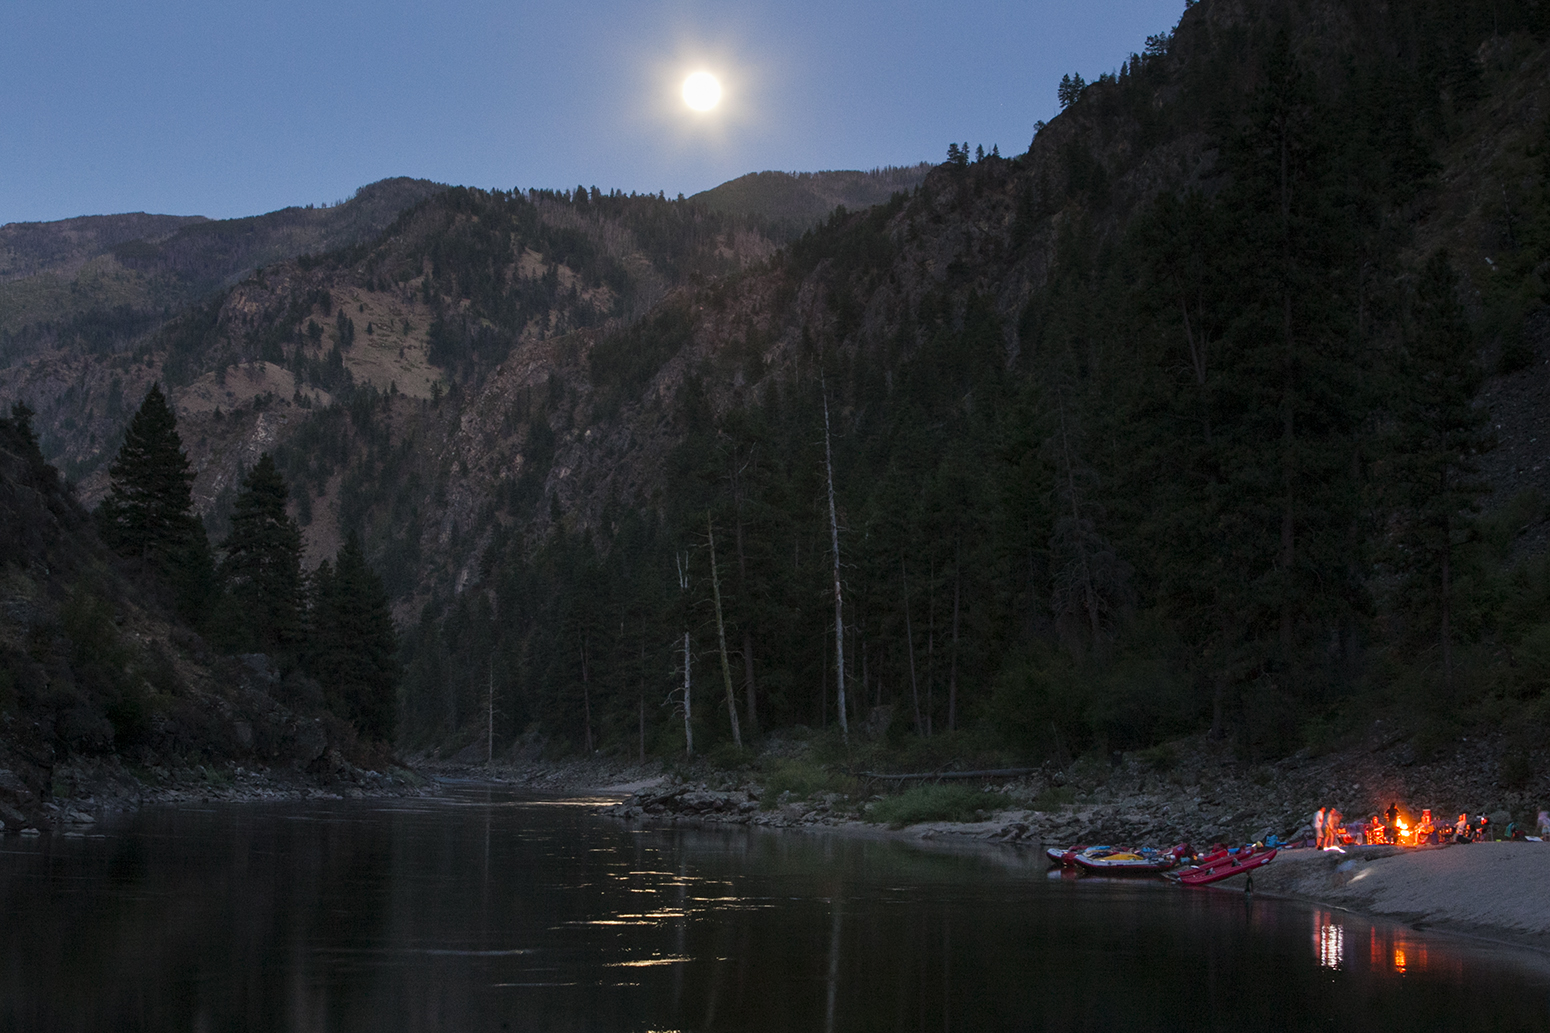 Alder Creek Camp on the River of No Return 2013.